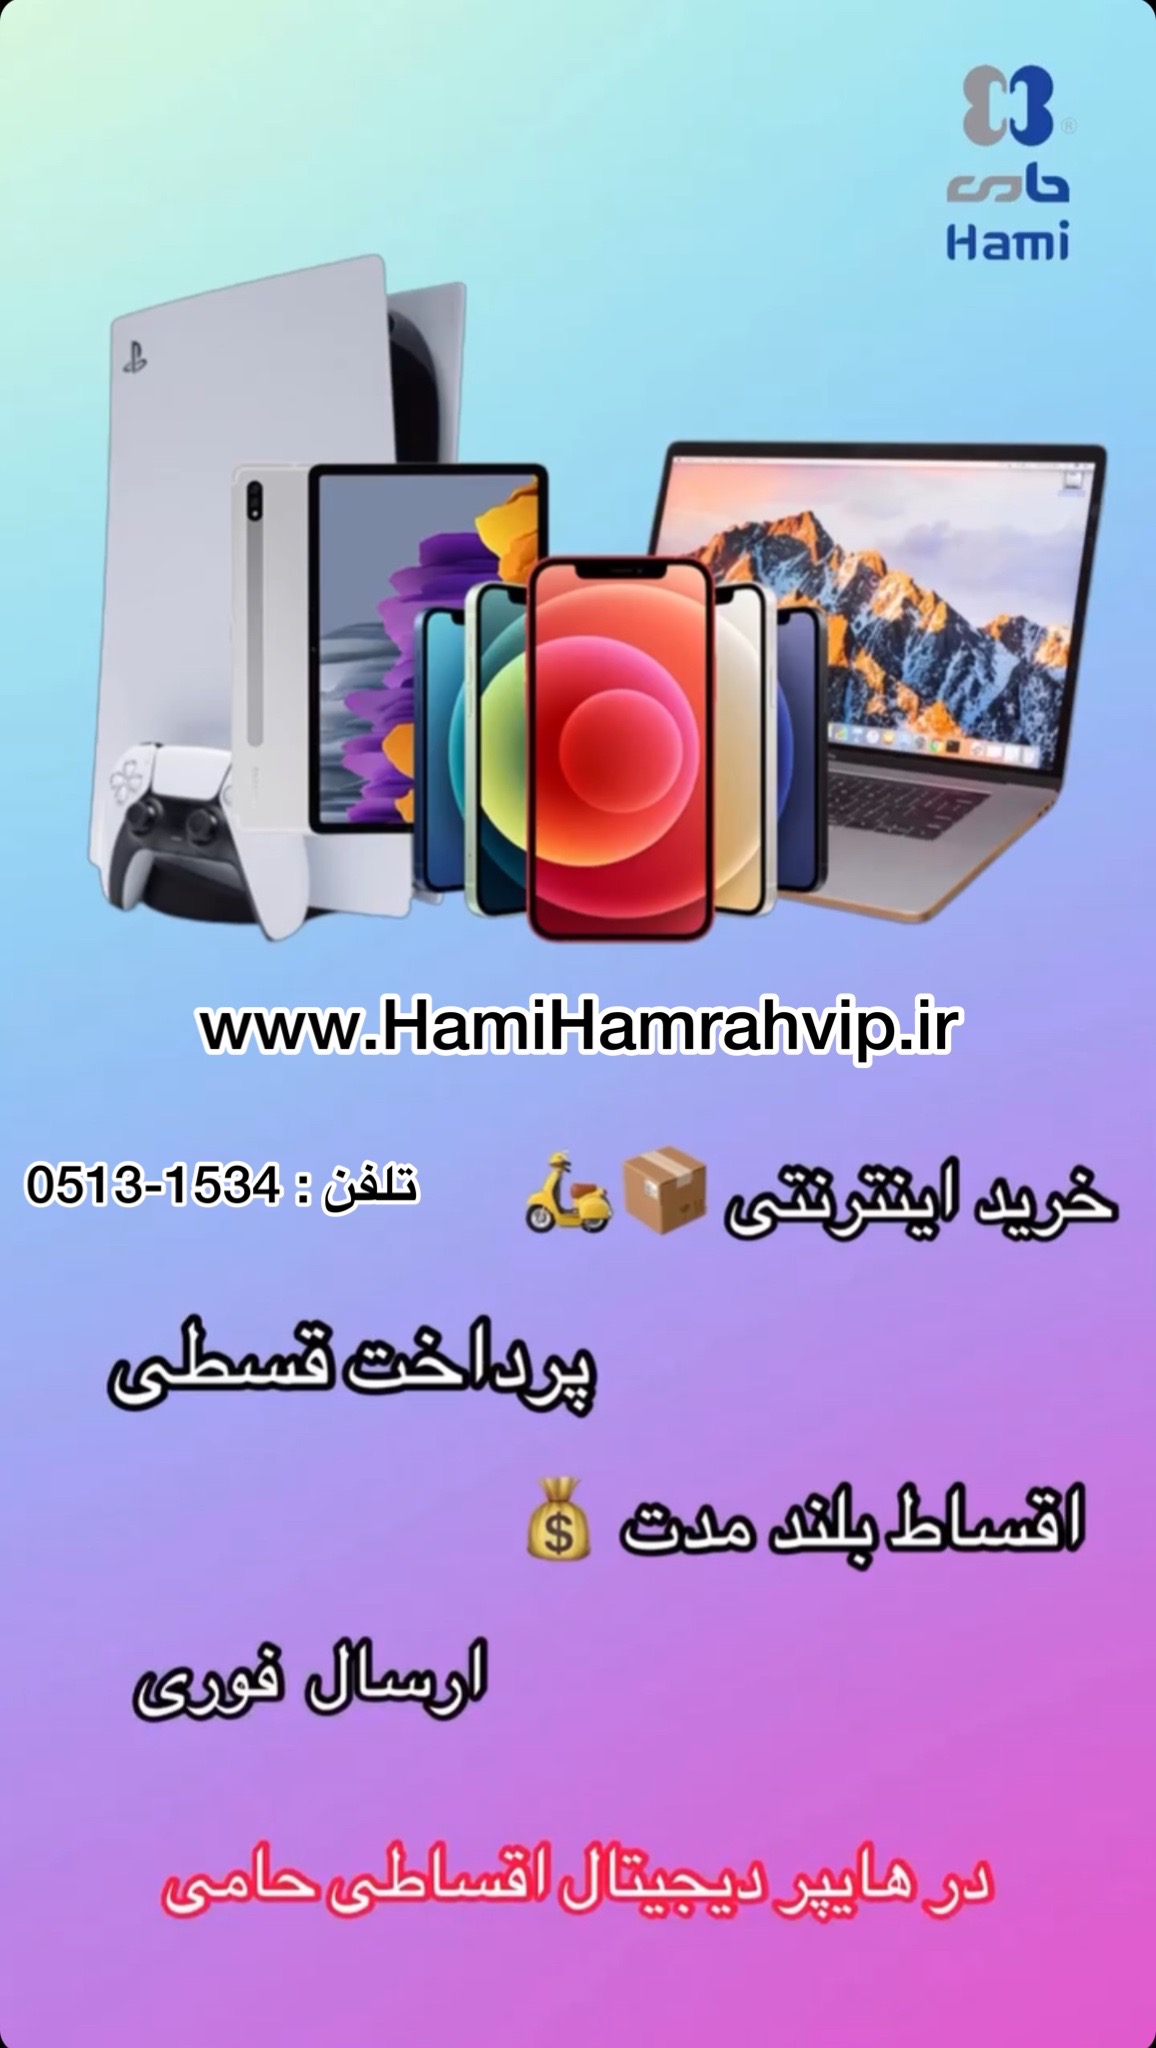 خرید اقساطی موبایل در هایپردیجیتال اقساطی حامی www.hamihamrahvip.ir